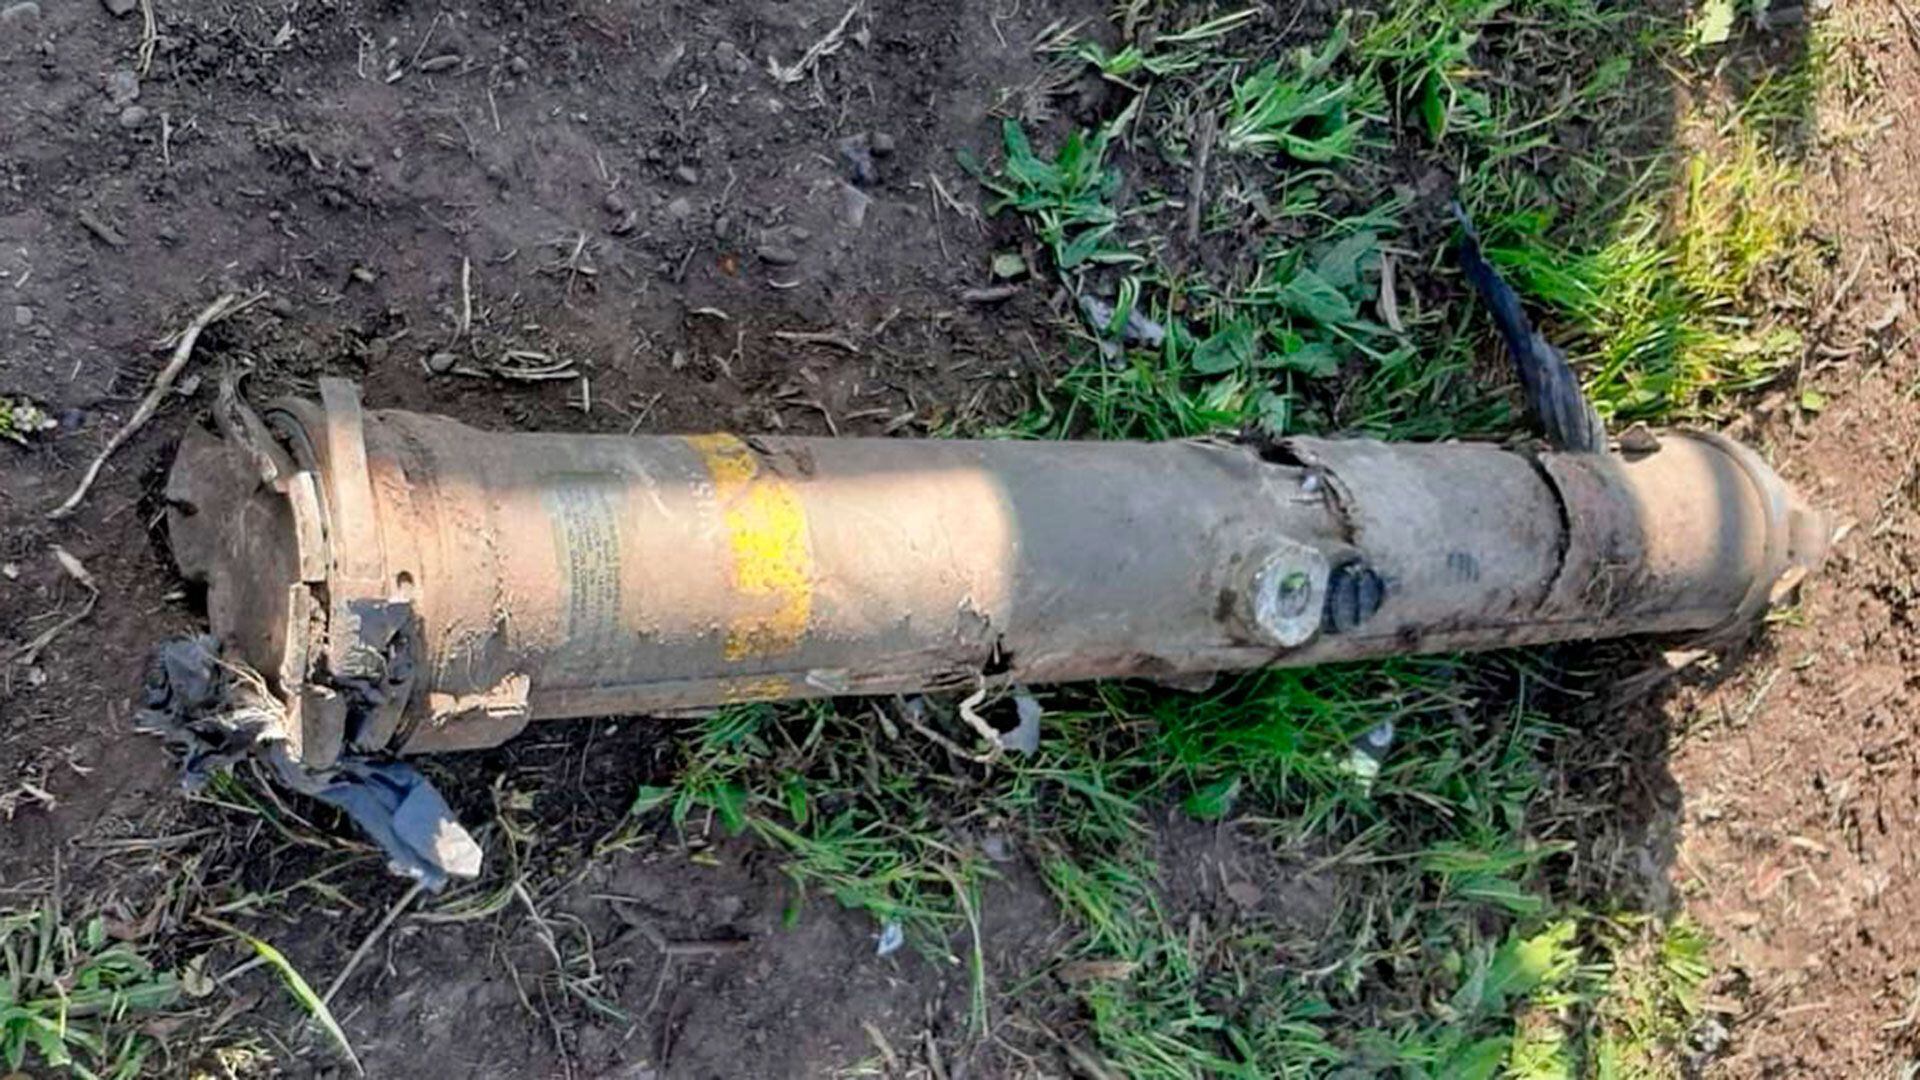 misil robado 2015 ministerio de defensa agustin rossi